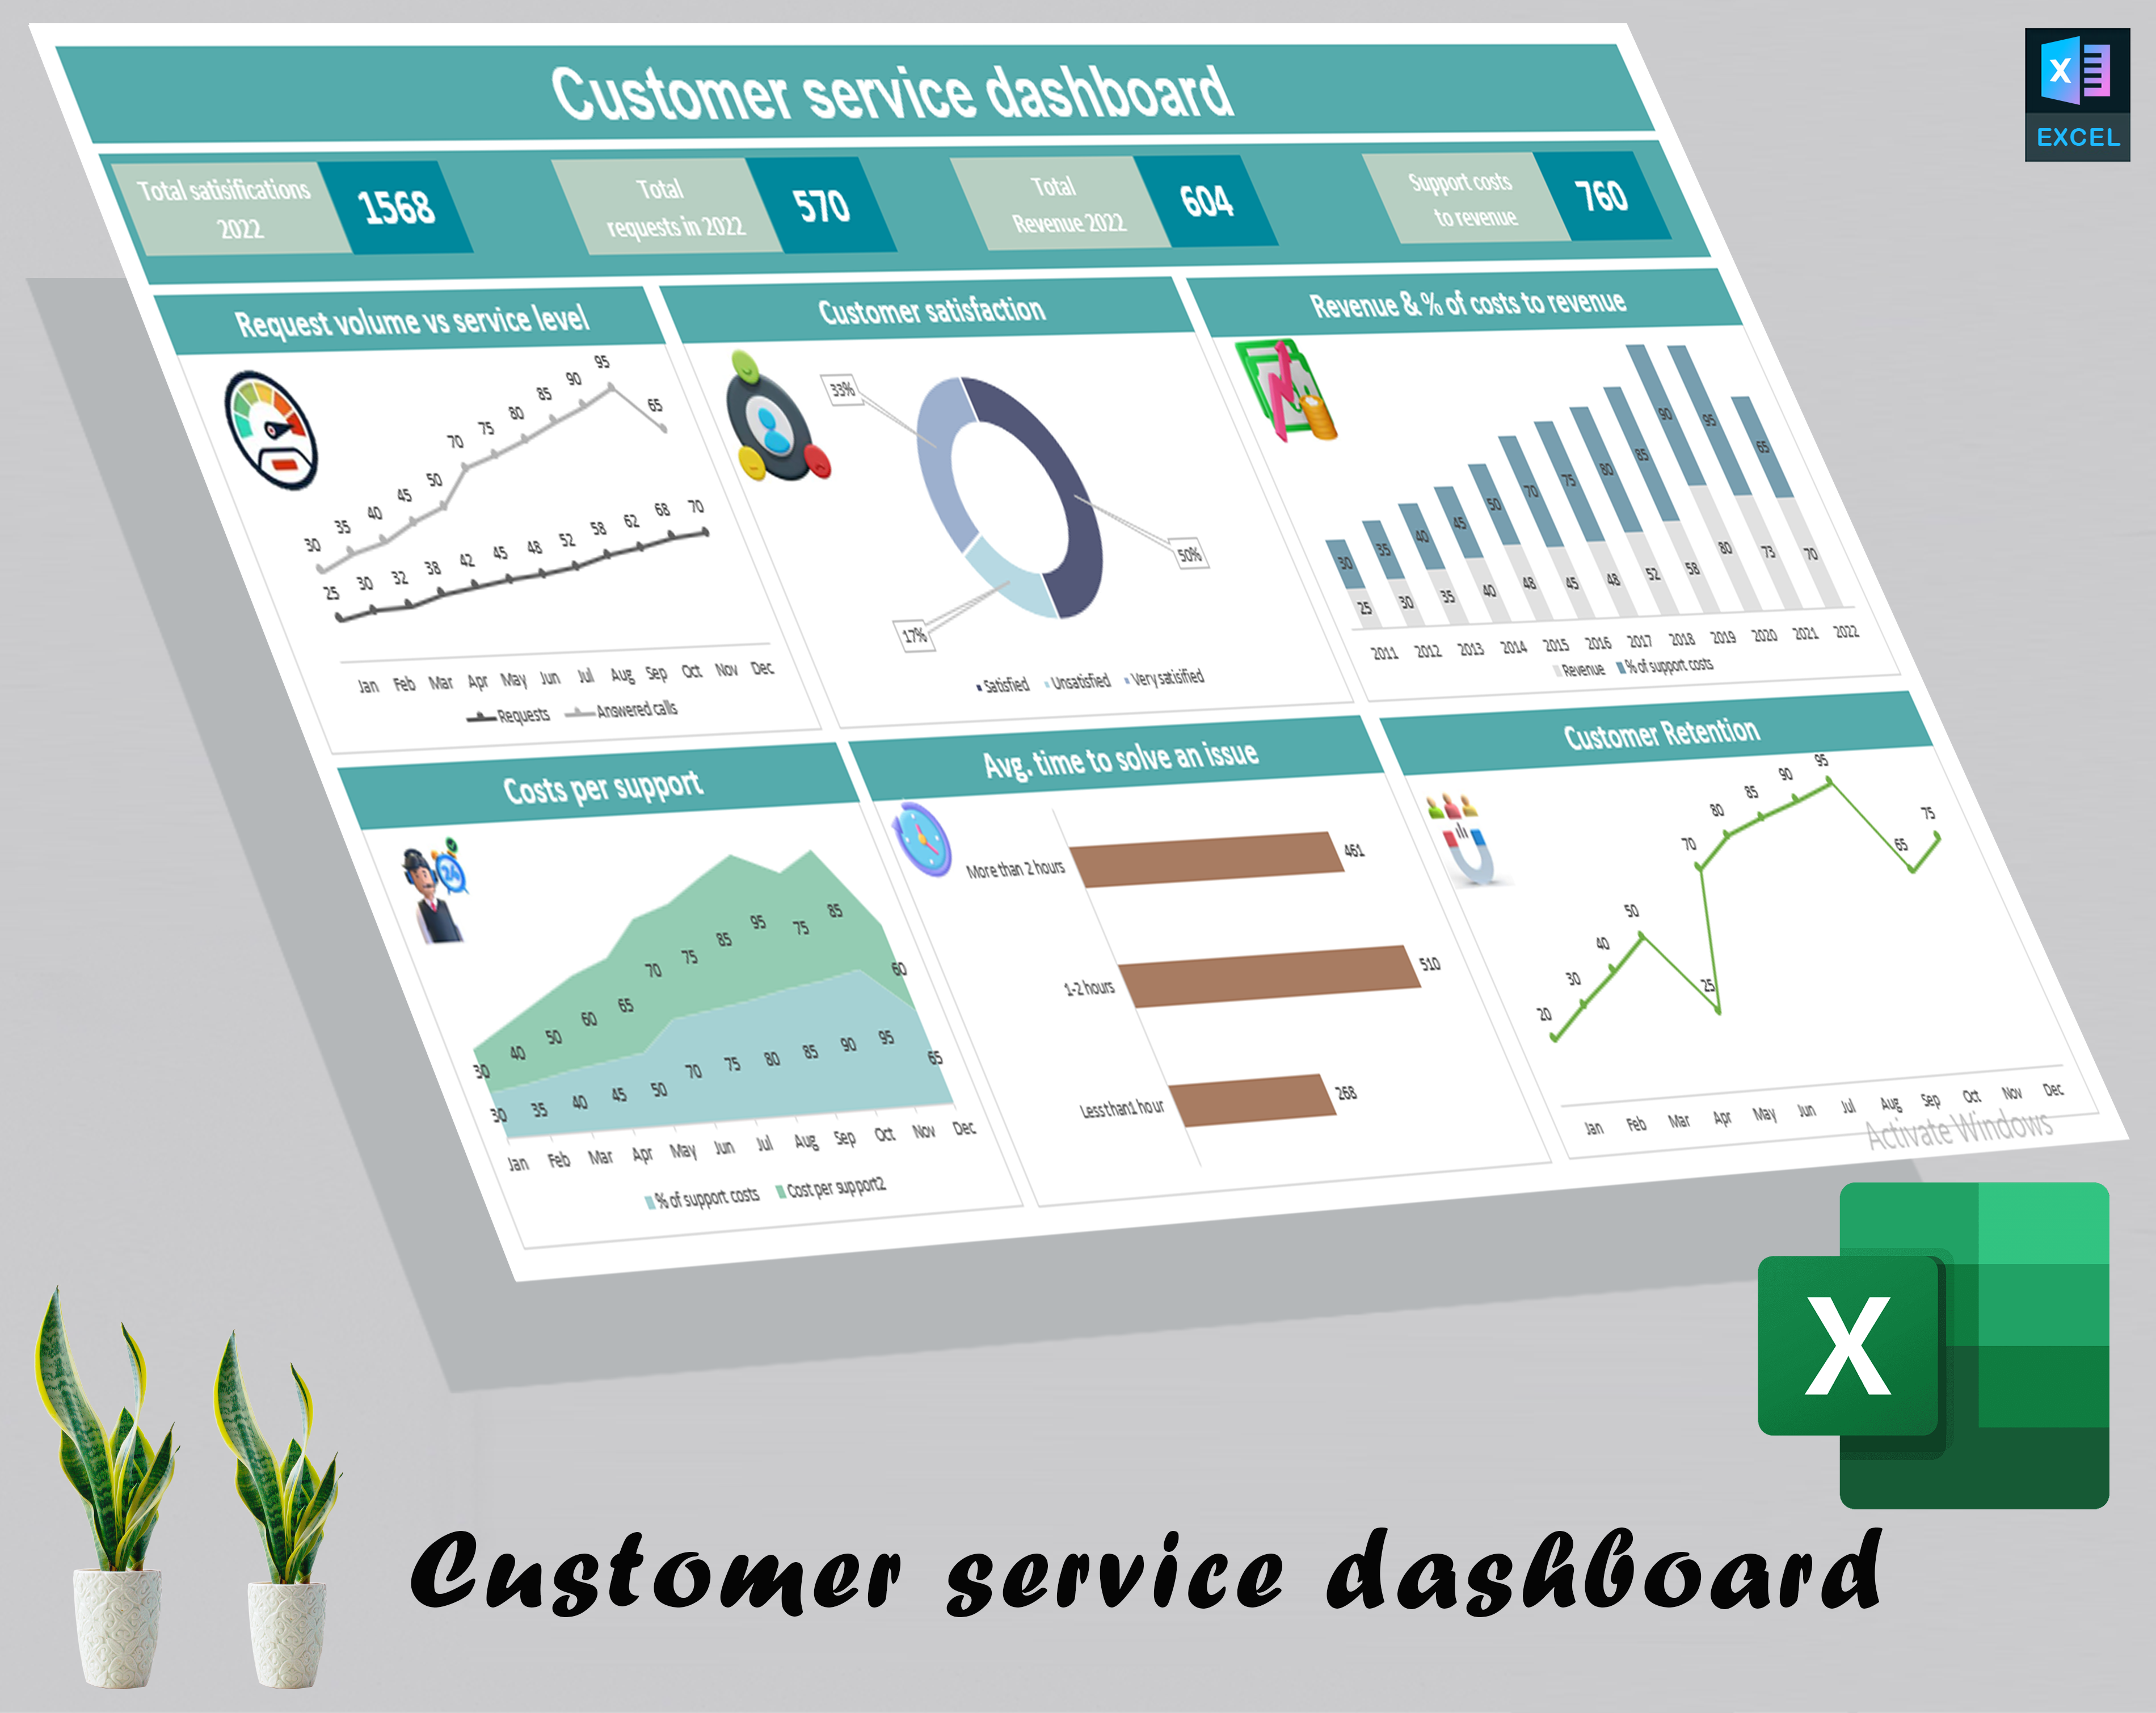 Customer service dashboard